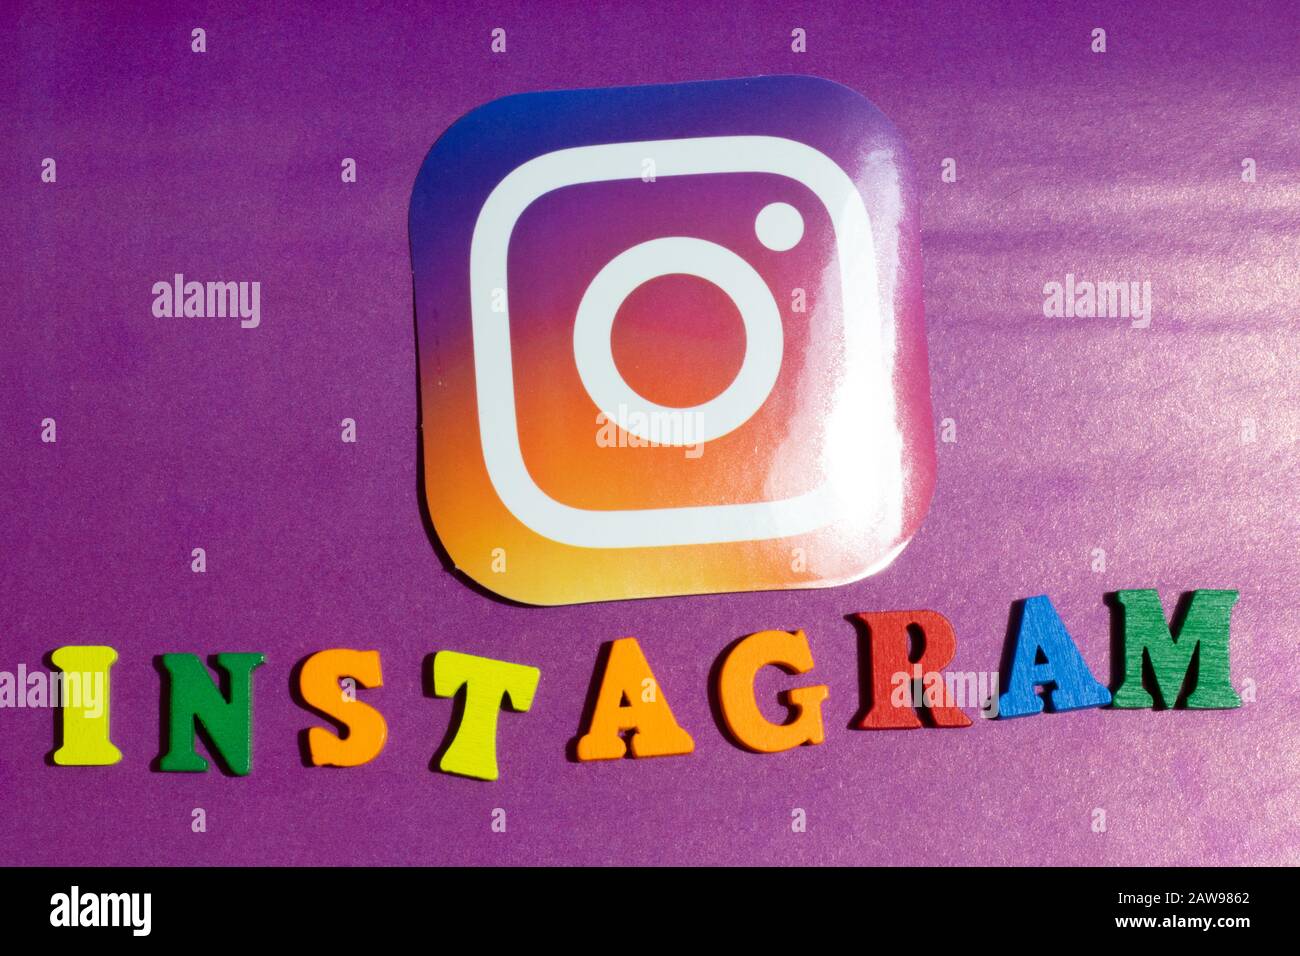 Los Angeles, Californie, États-Unis - 25 janvier 2020: Icône du logo Instagram sur fond mauve, éditorial illustratif Banque D'Images